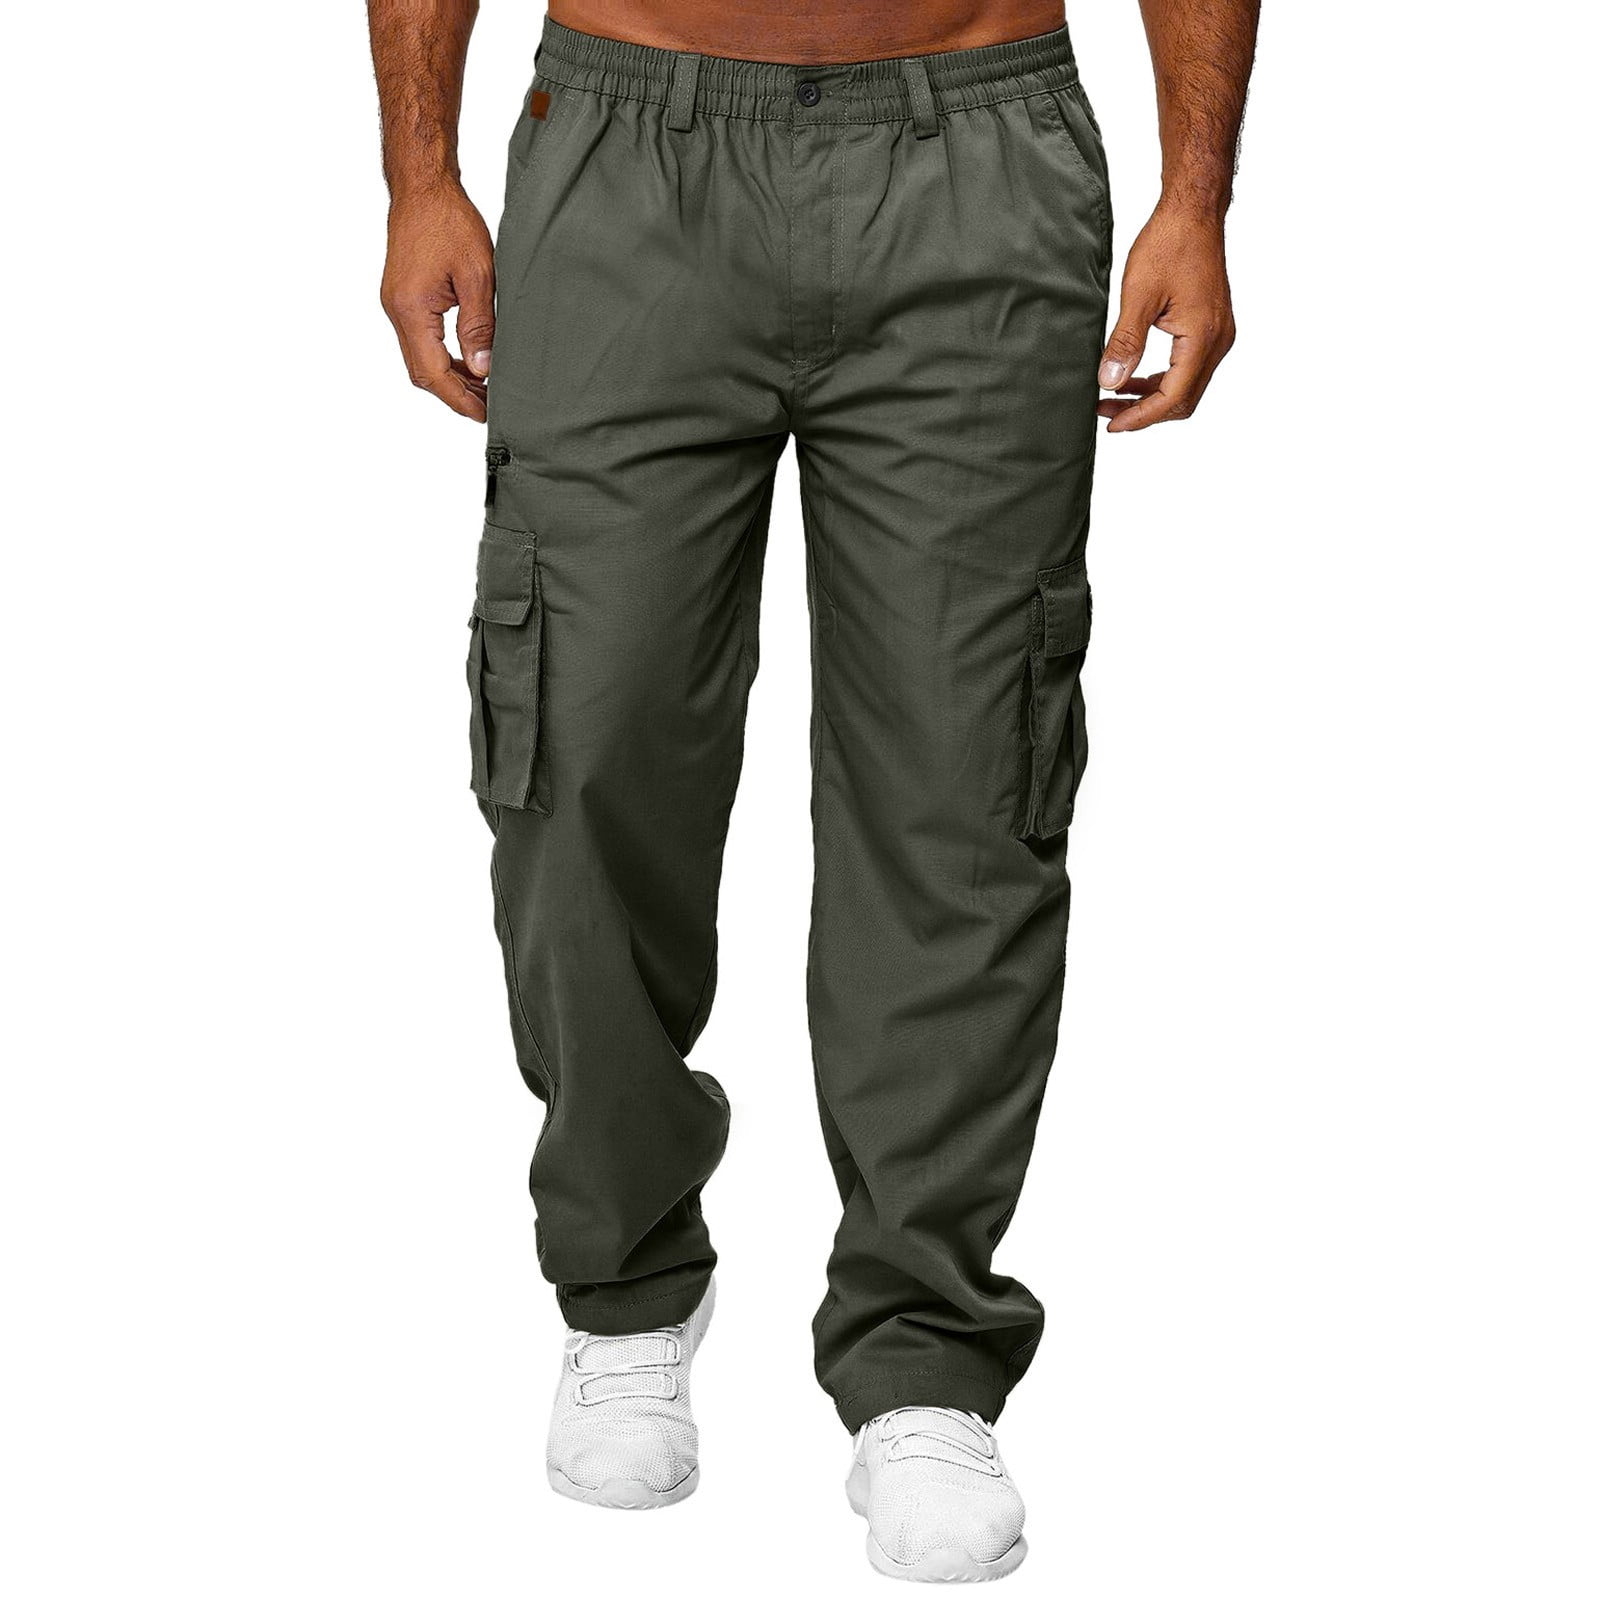 Baocc Cargo Pants for Men Men's Pants Men All Season Fit Pant Casual ...